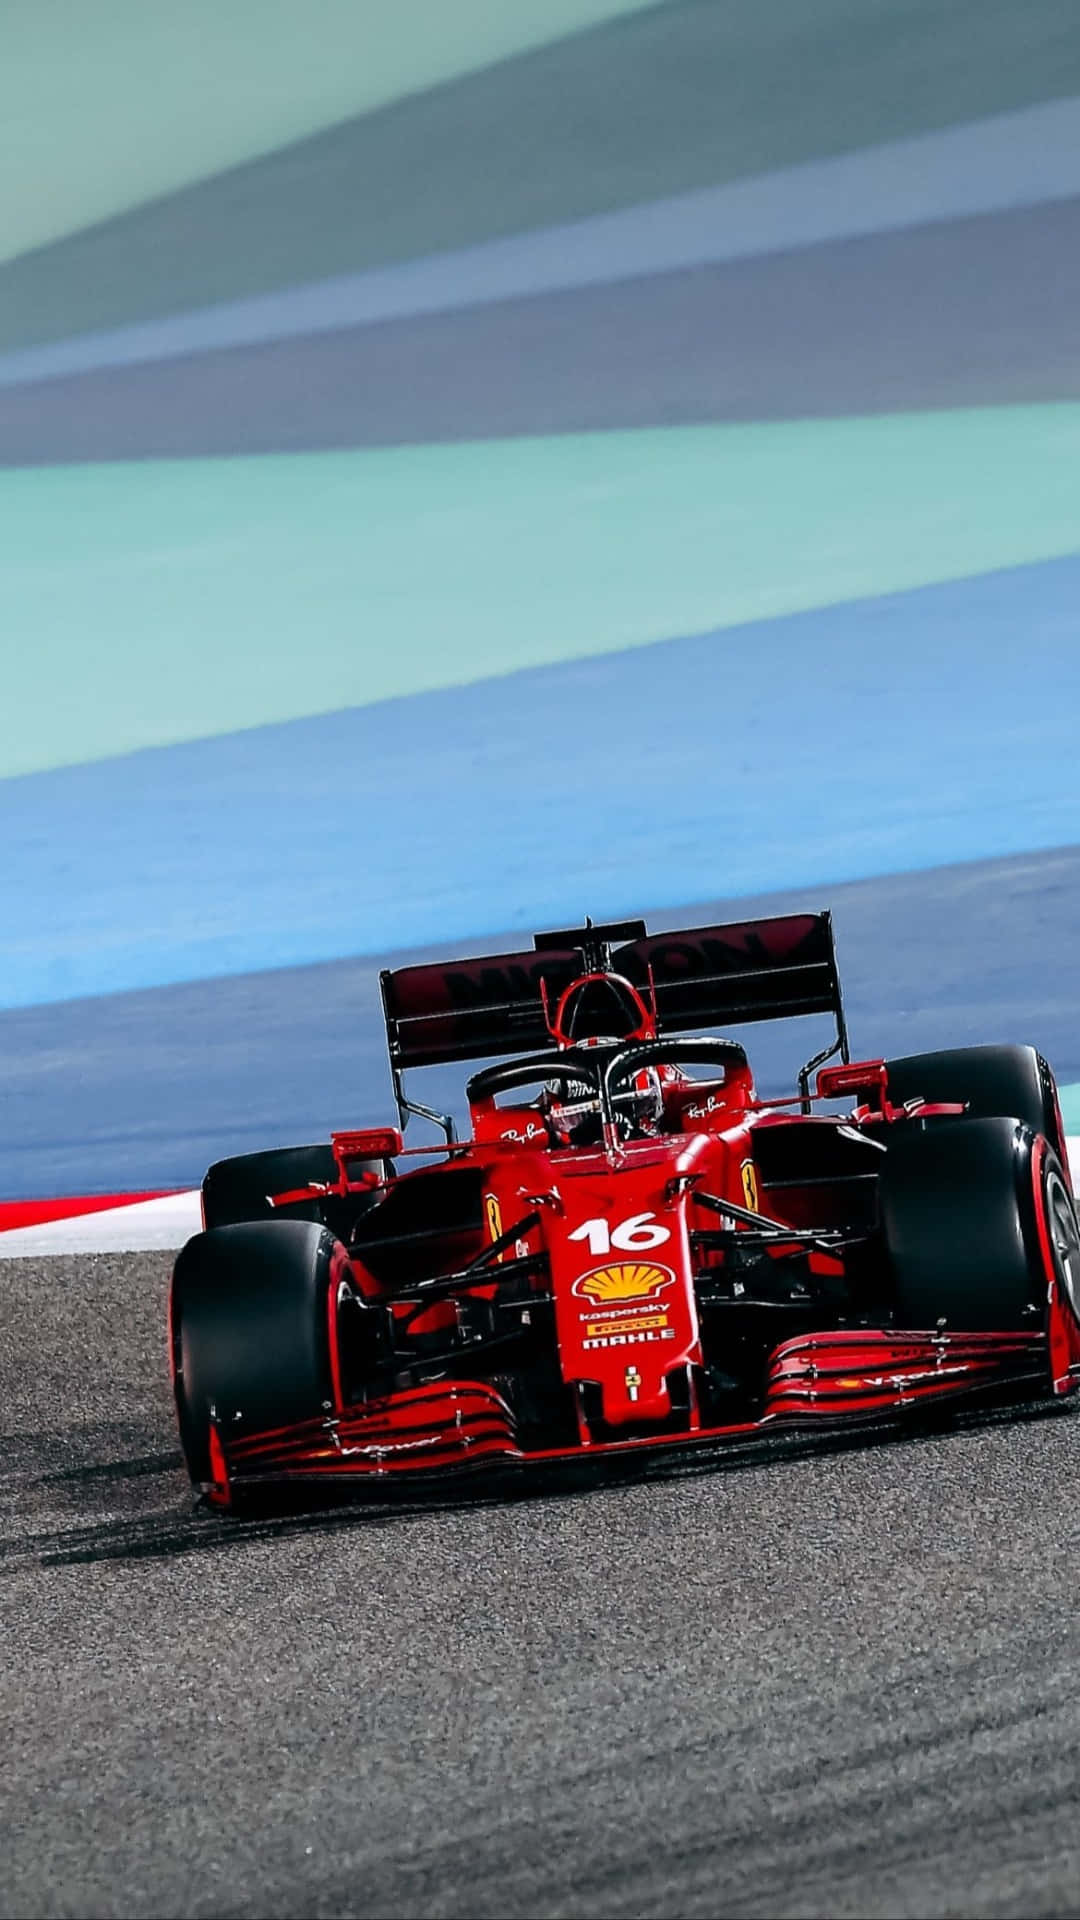 Scuderia Ferrari Races Ahead on the Track Wallpaper